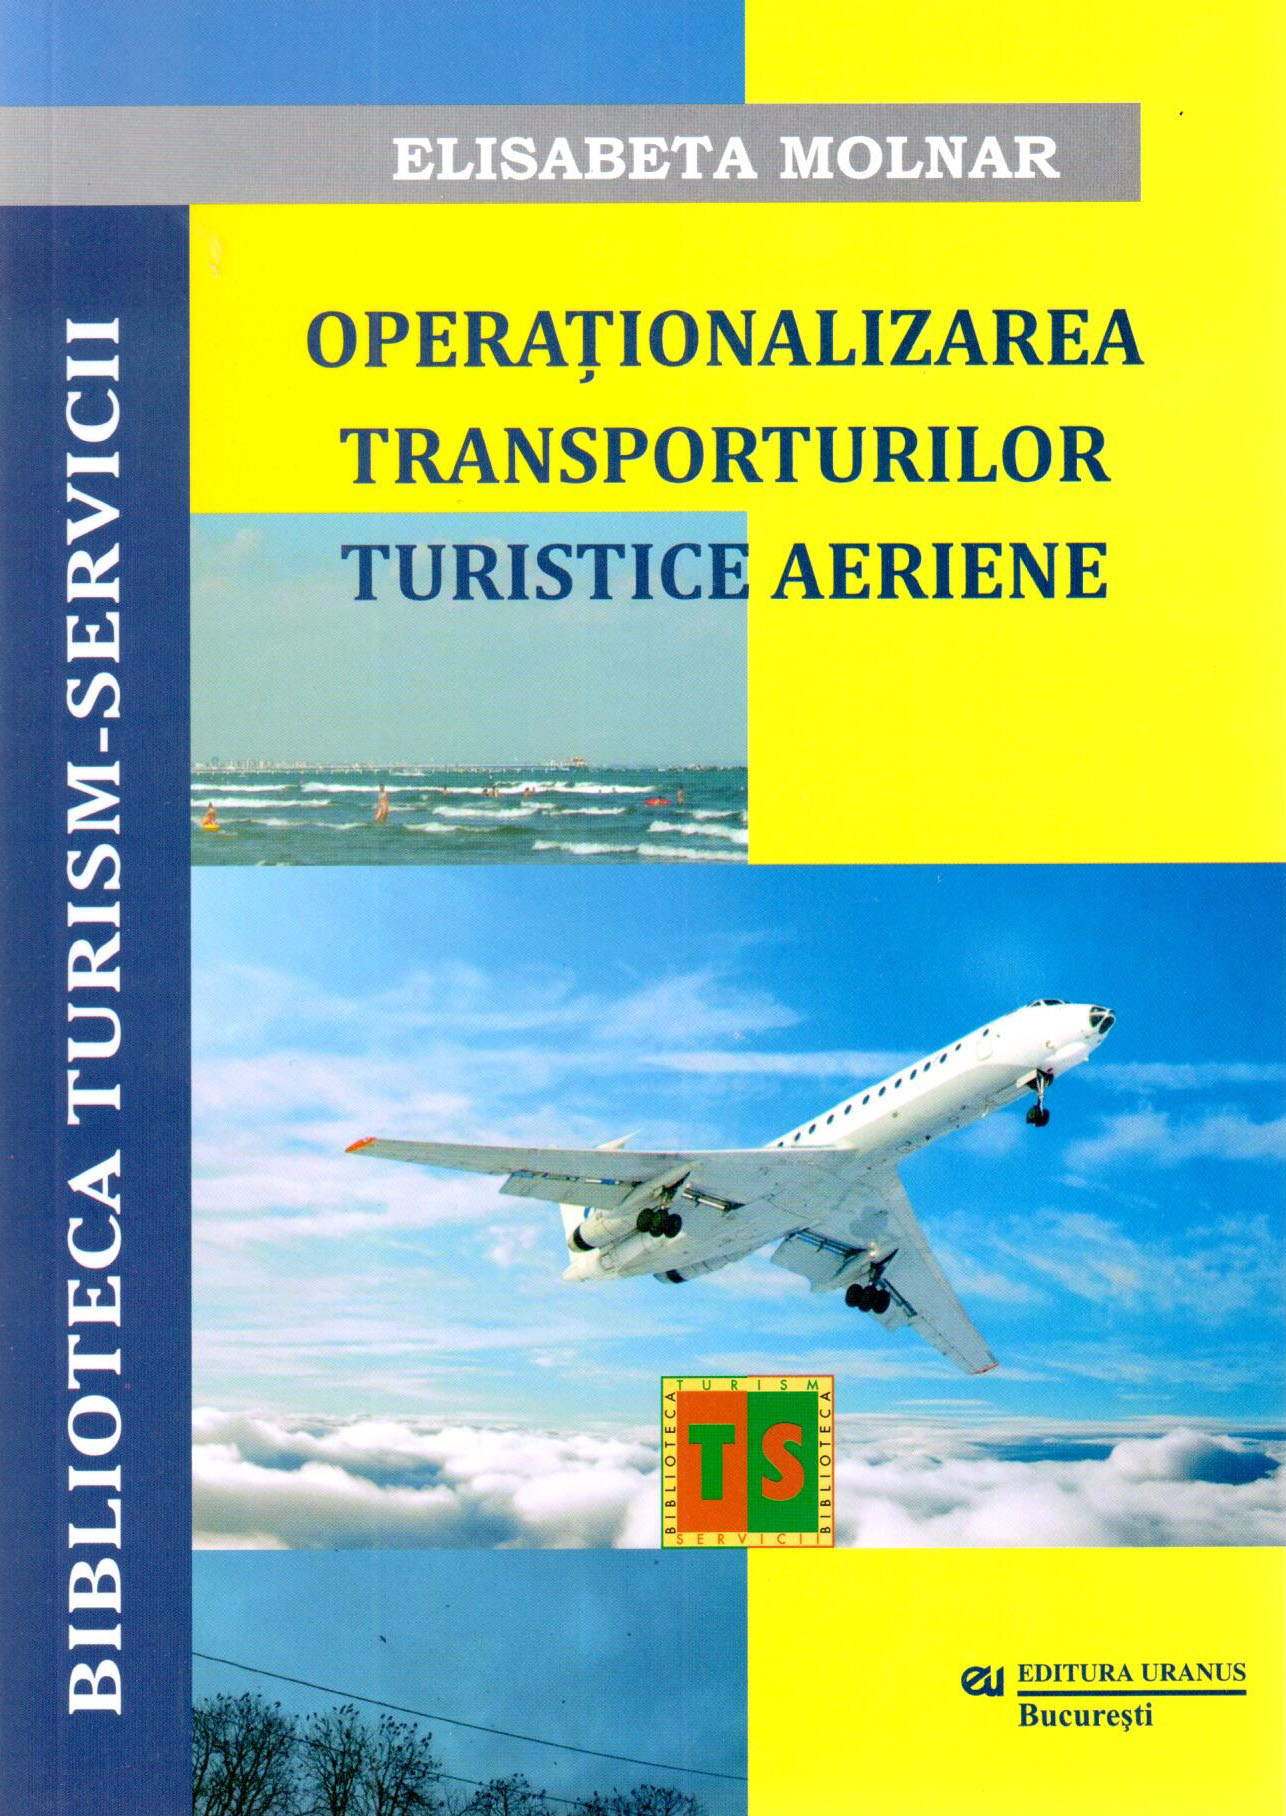 Operationalizarea Transporturilor Turistice Aeriene